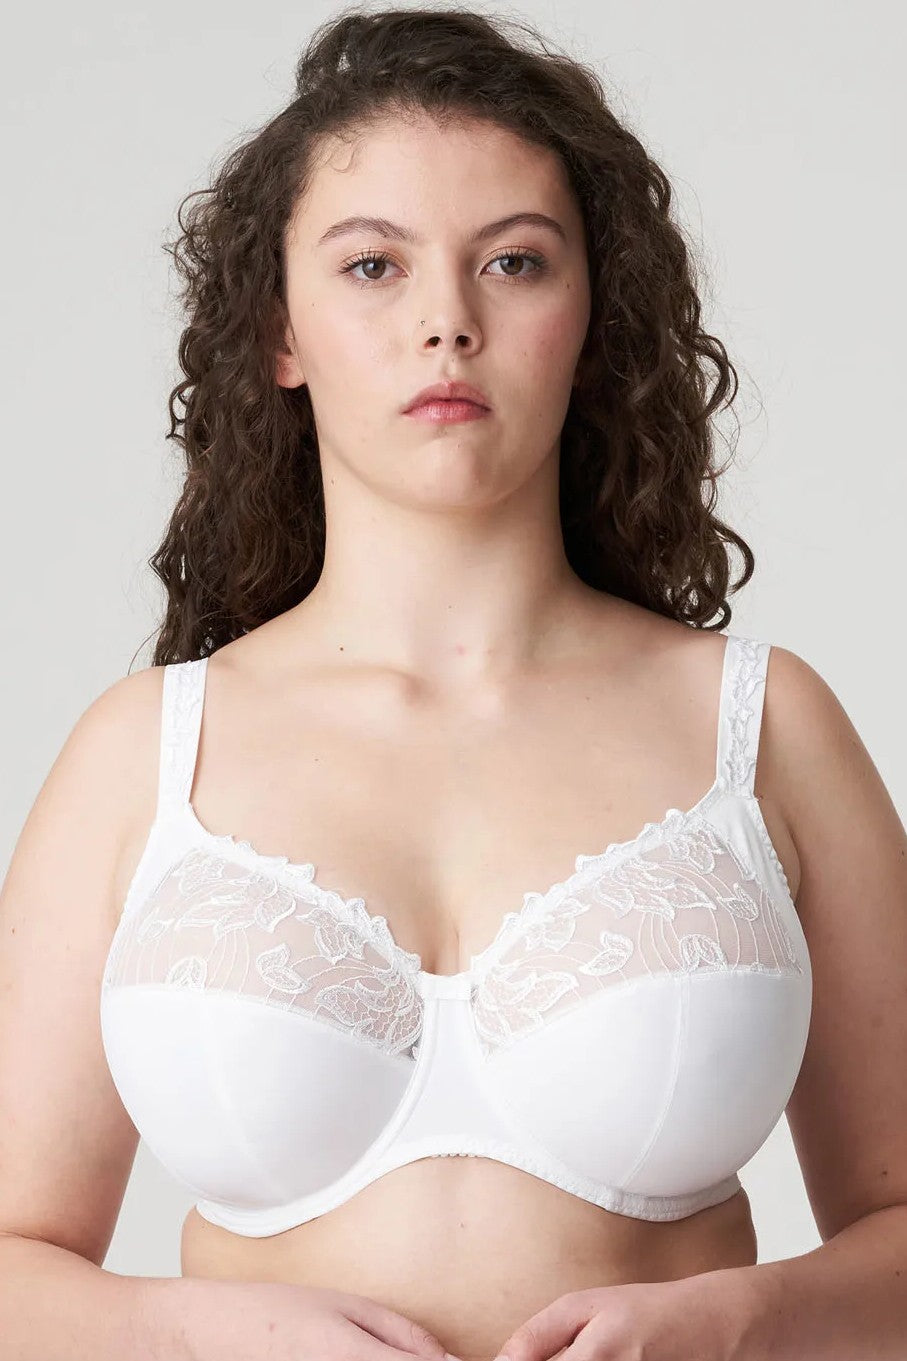 PrimaDonna DEAUVILLE white full cup bra